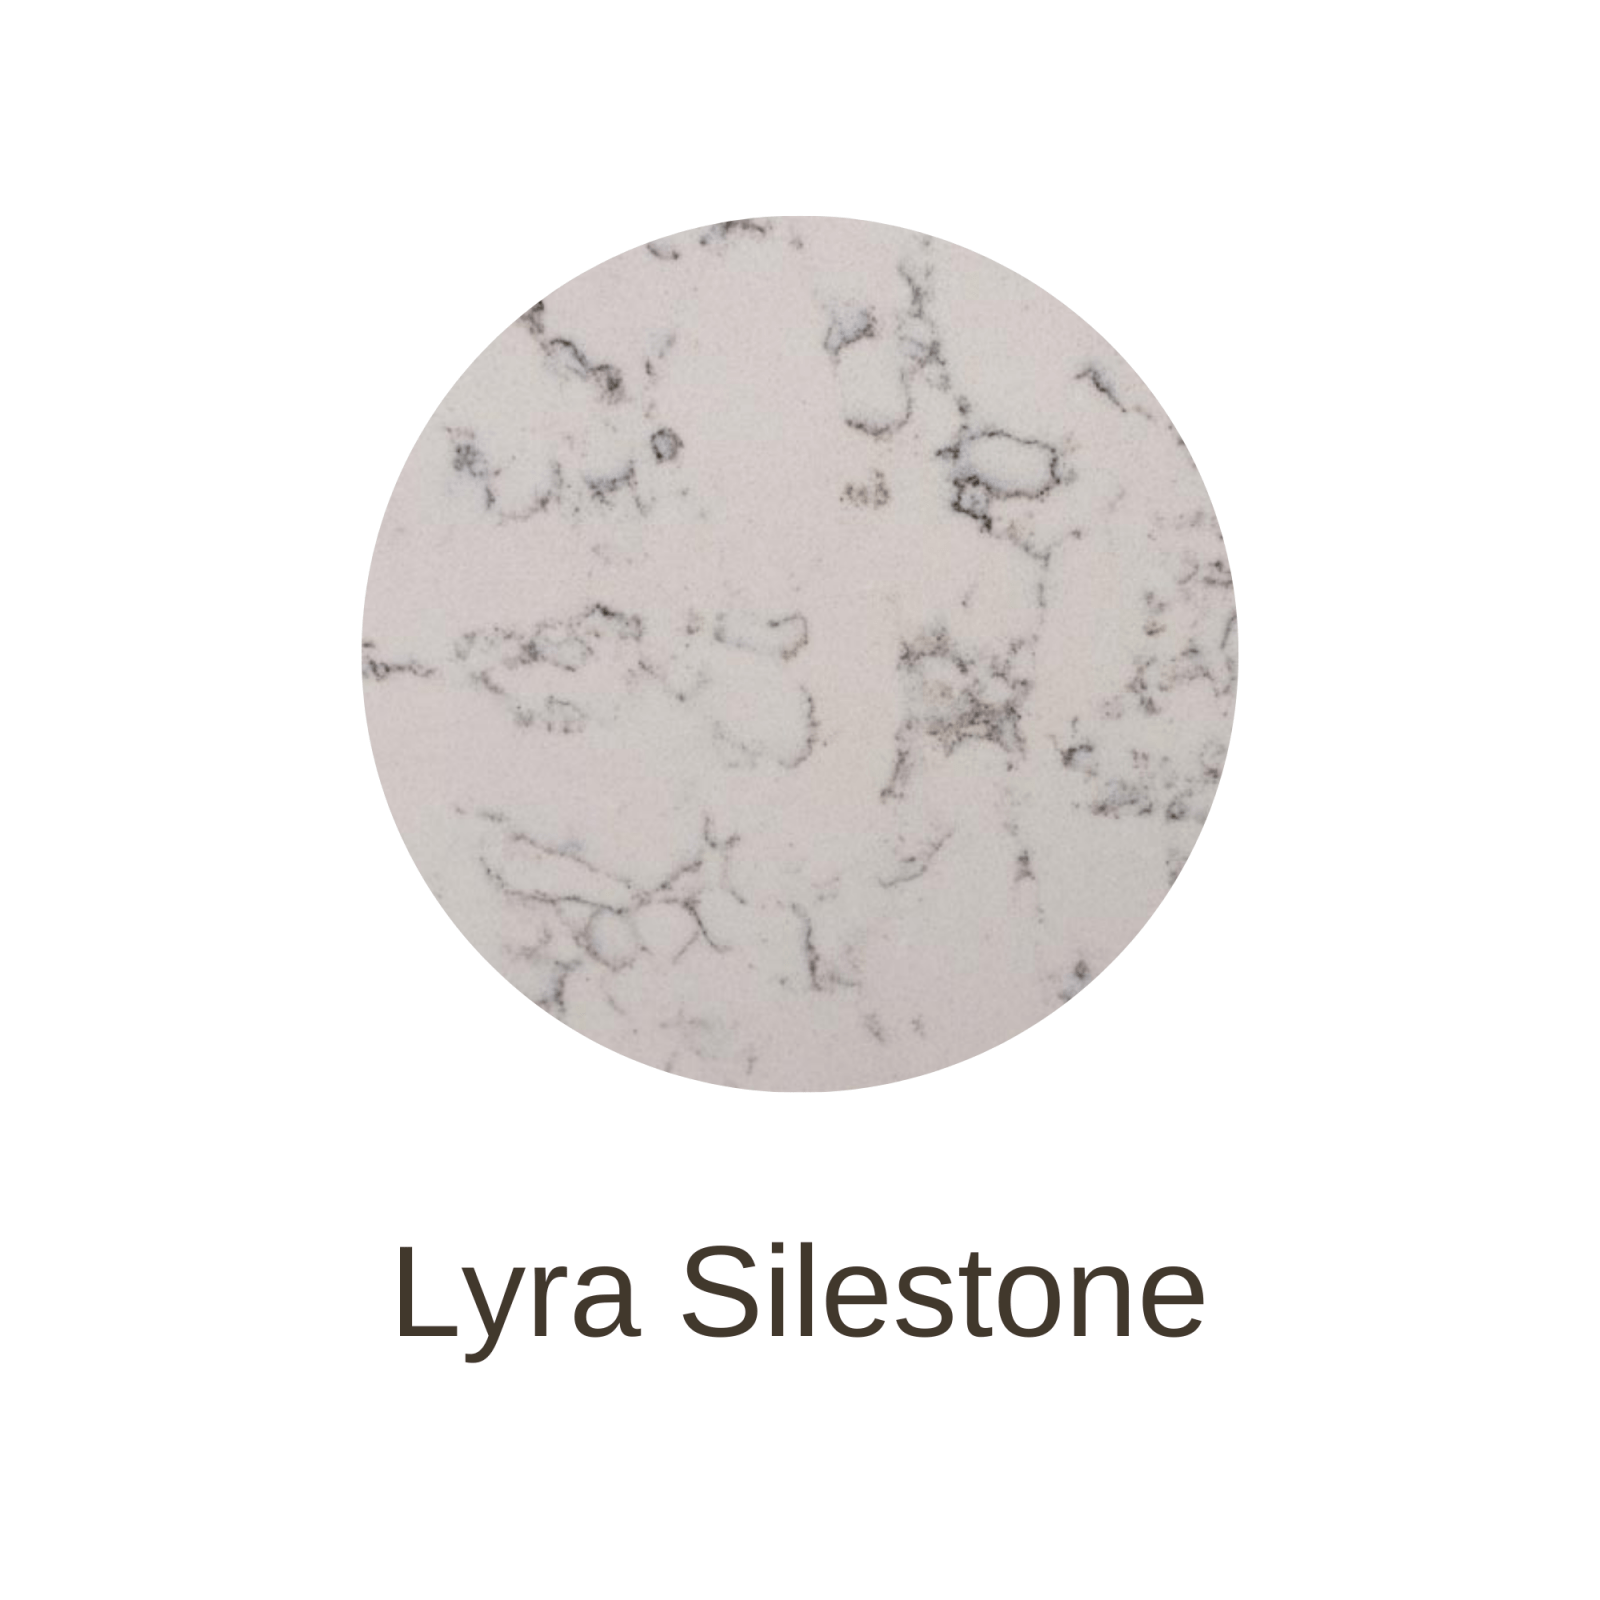 LyraSilestone